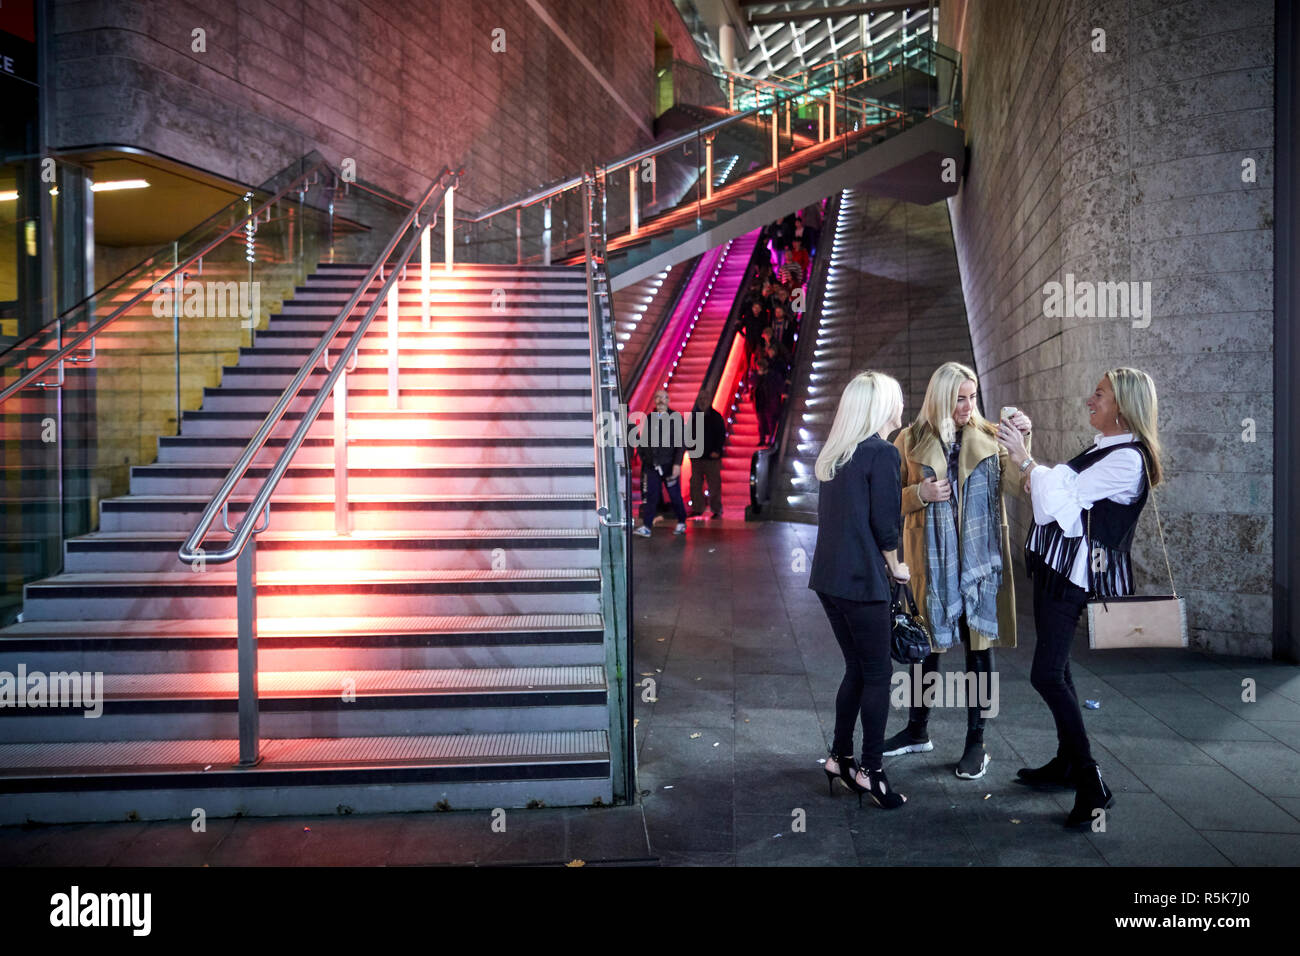 Das Stadtzentrum von Liverpool Liverpool One Fahrtreppen und Schritte als Damen Blick auf Handy Bilder Stockfoto